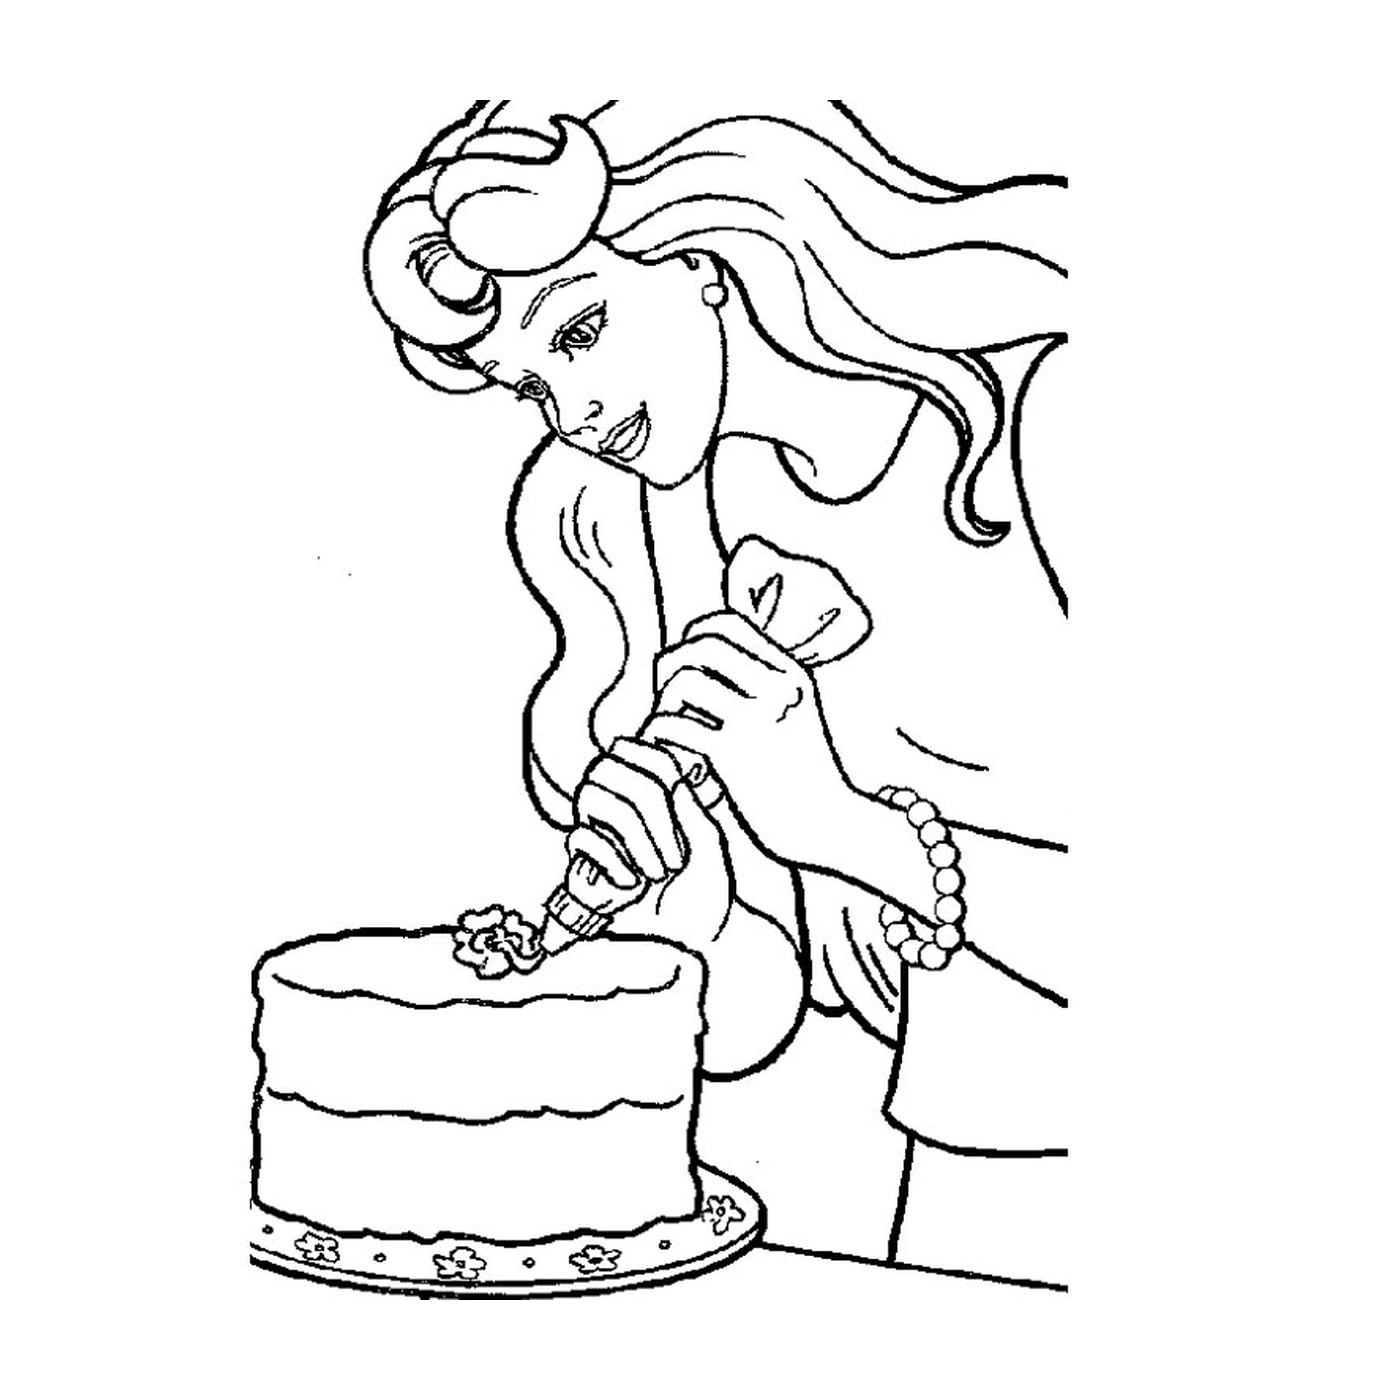  باربي الافتراضية مع امرأة تزيز كعكة 